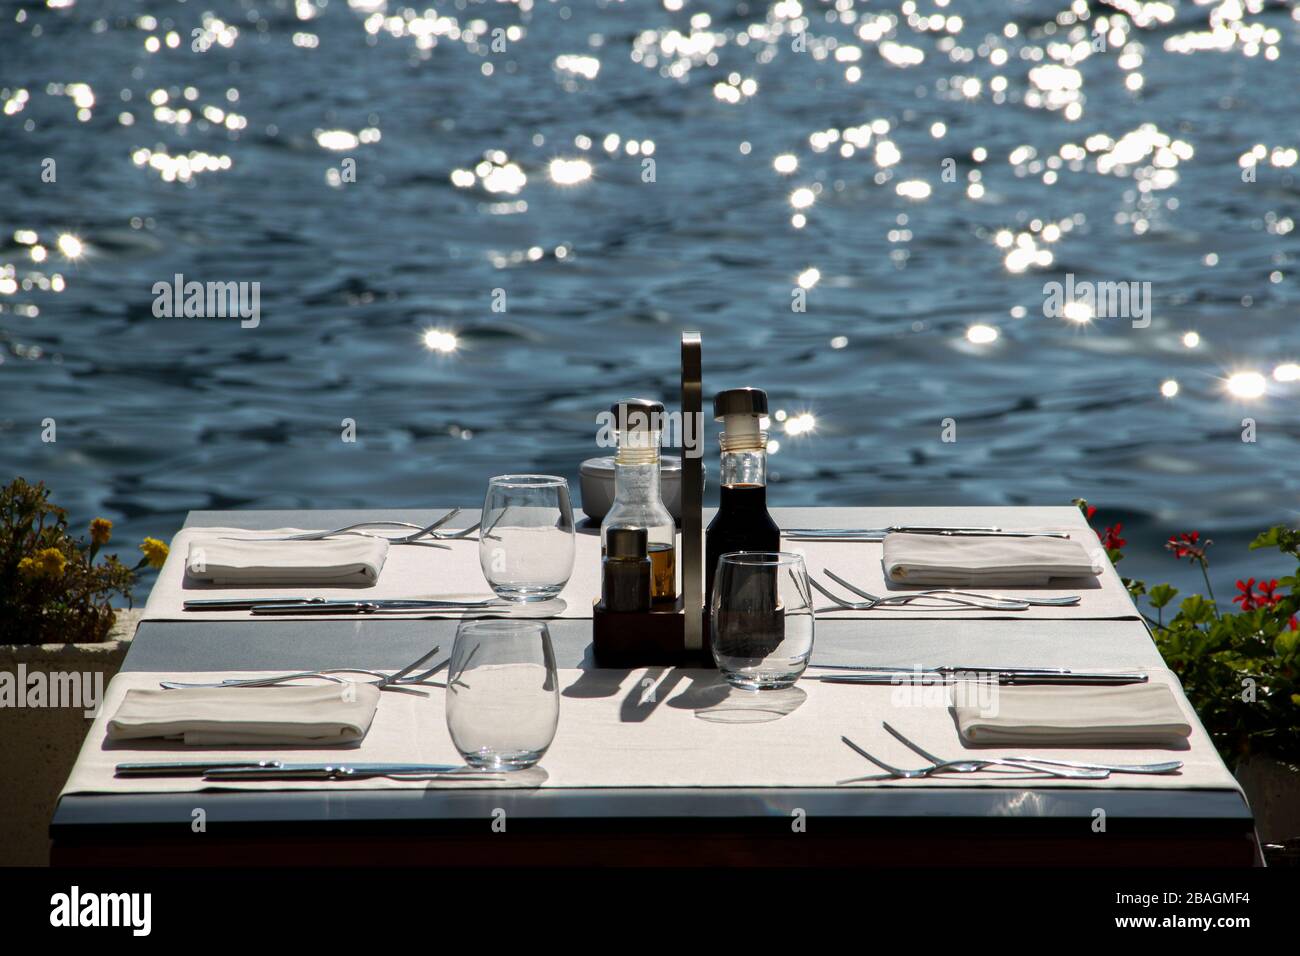 Bel endroit pour dîner au bord de la mer. Table en bordure de rive prête pour les nouveaux clients Banque D'Images